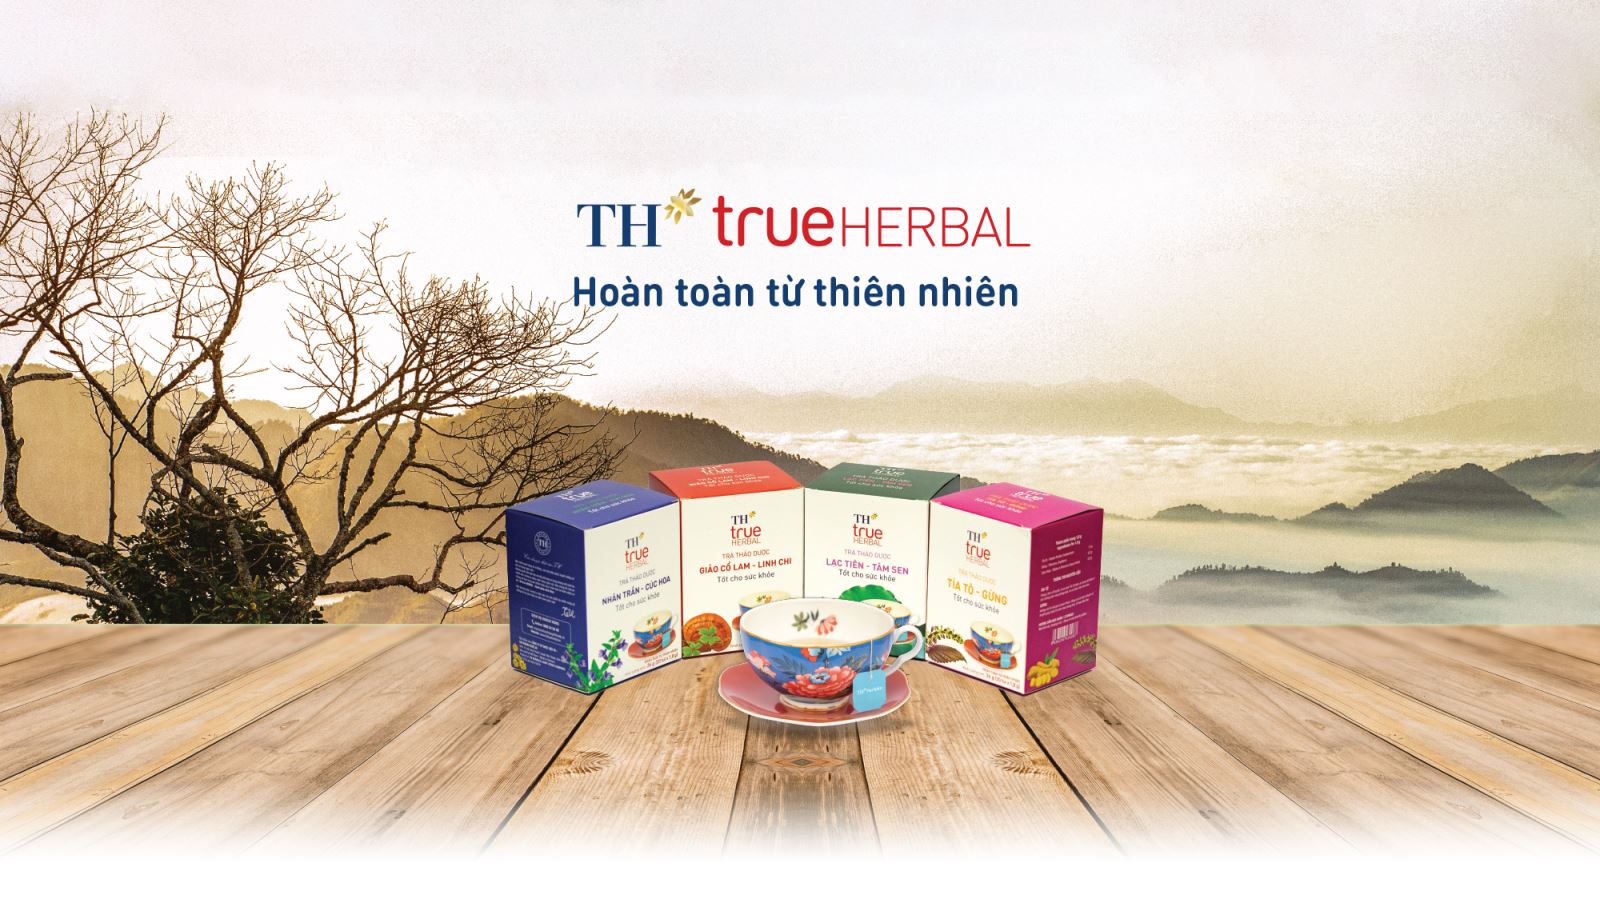 TH True Herbal trà thảo dược hoàn hảo cho sức khỏe